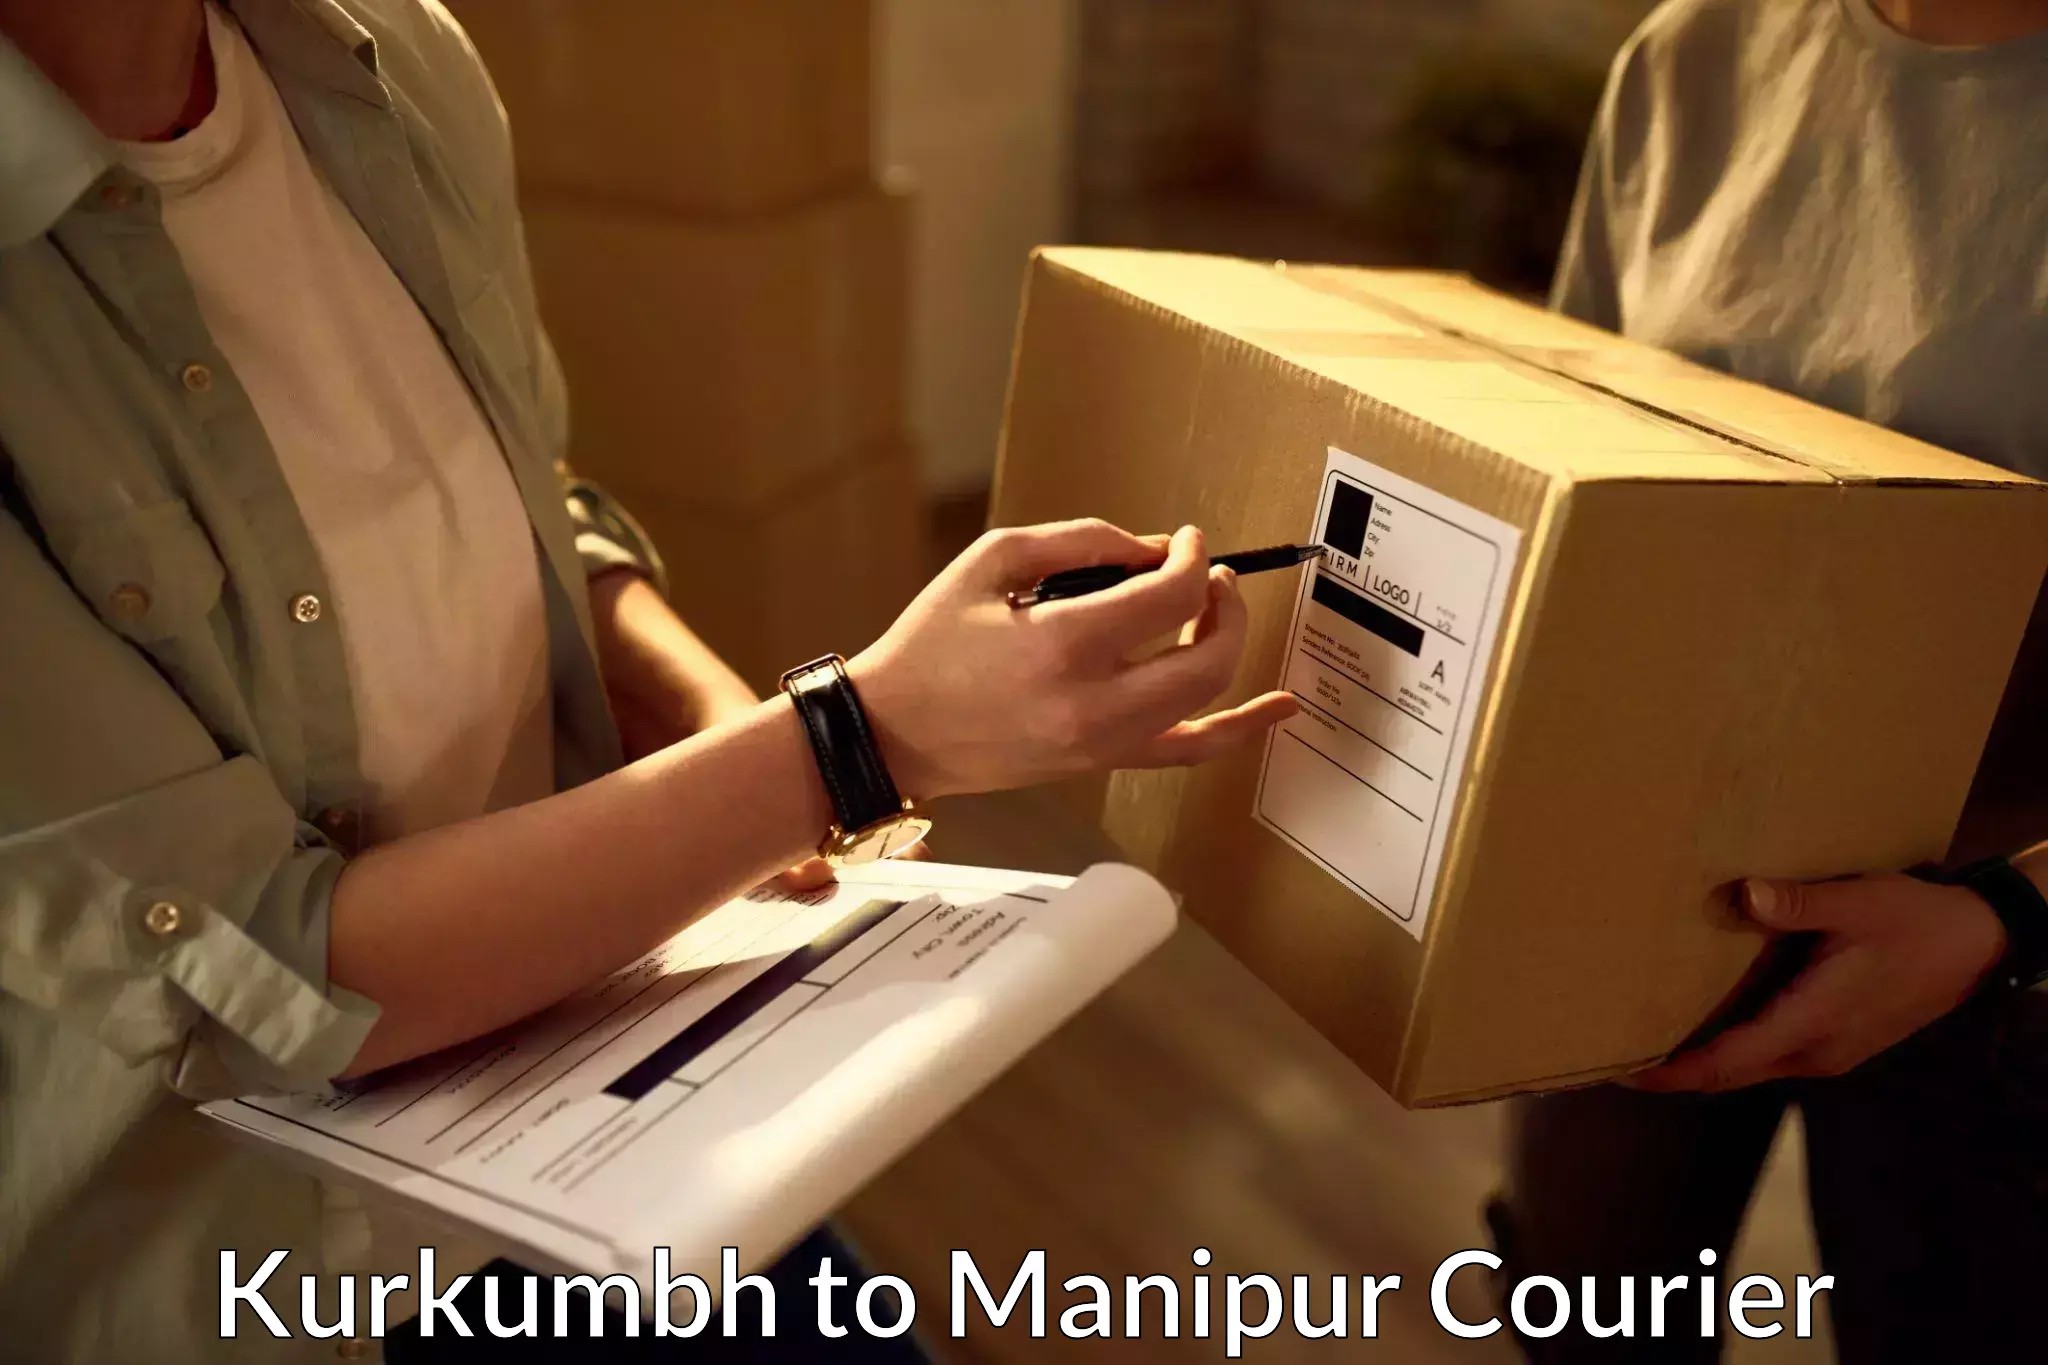 Quick dispatch service Kurkumbh to Manipur